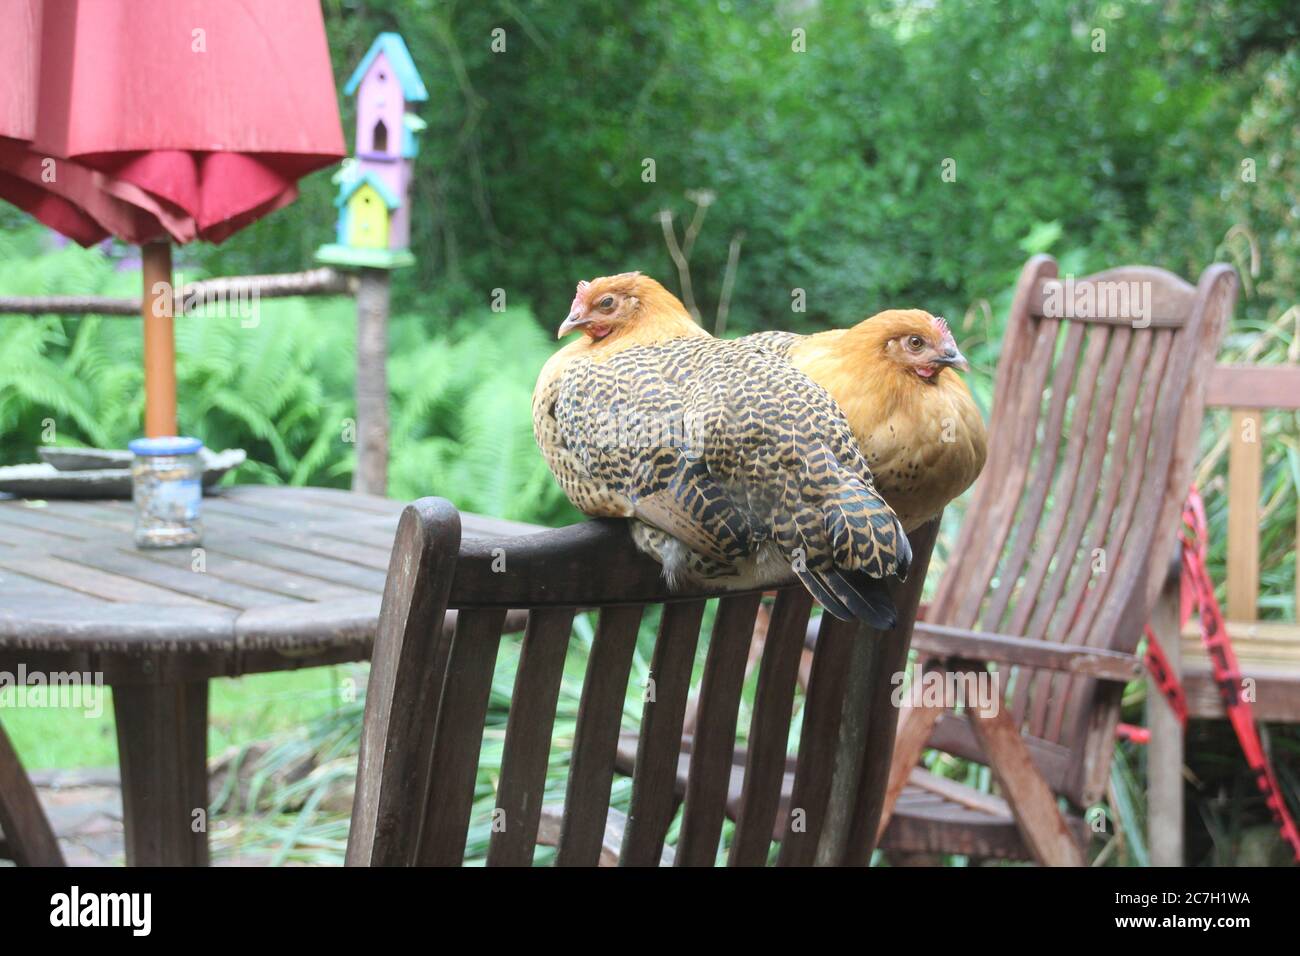 Ostfriesische Moewen Chicken sitting on patio chair Stock Photo